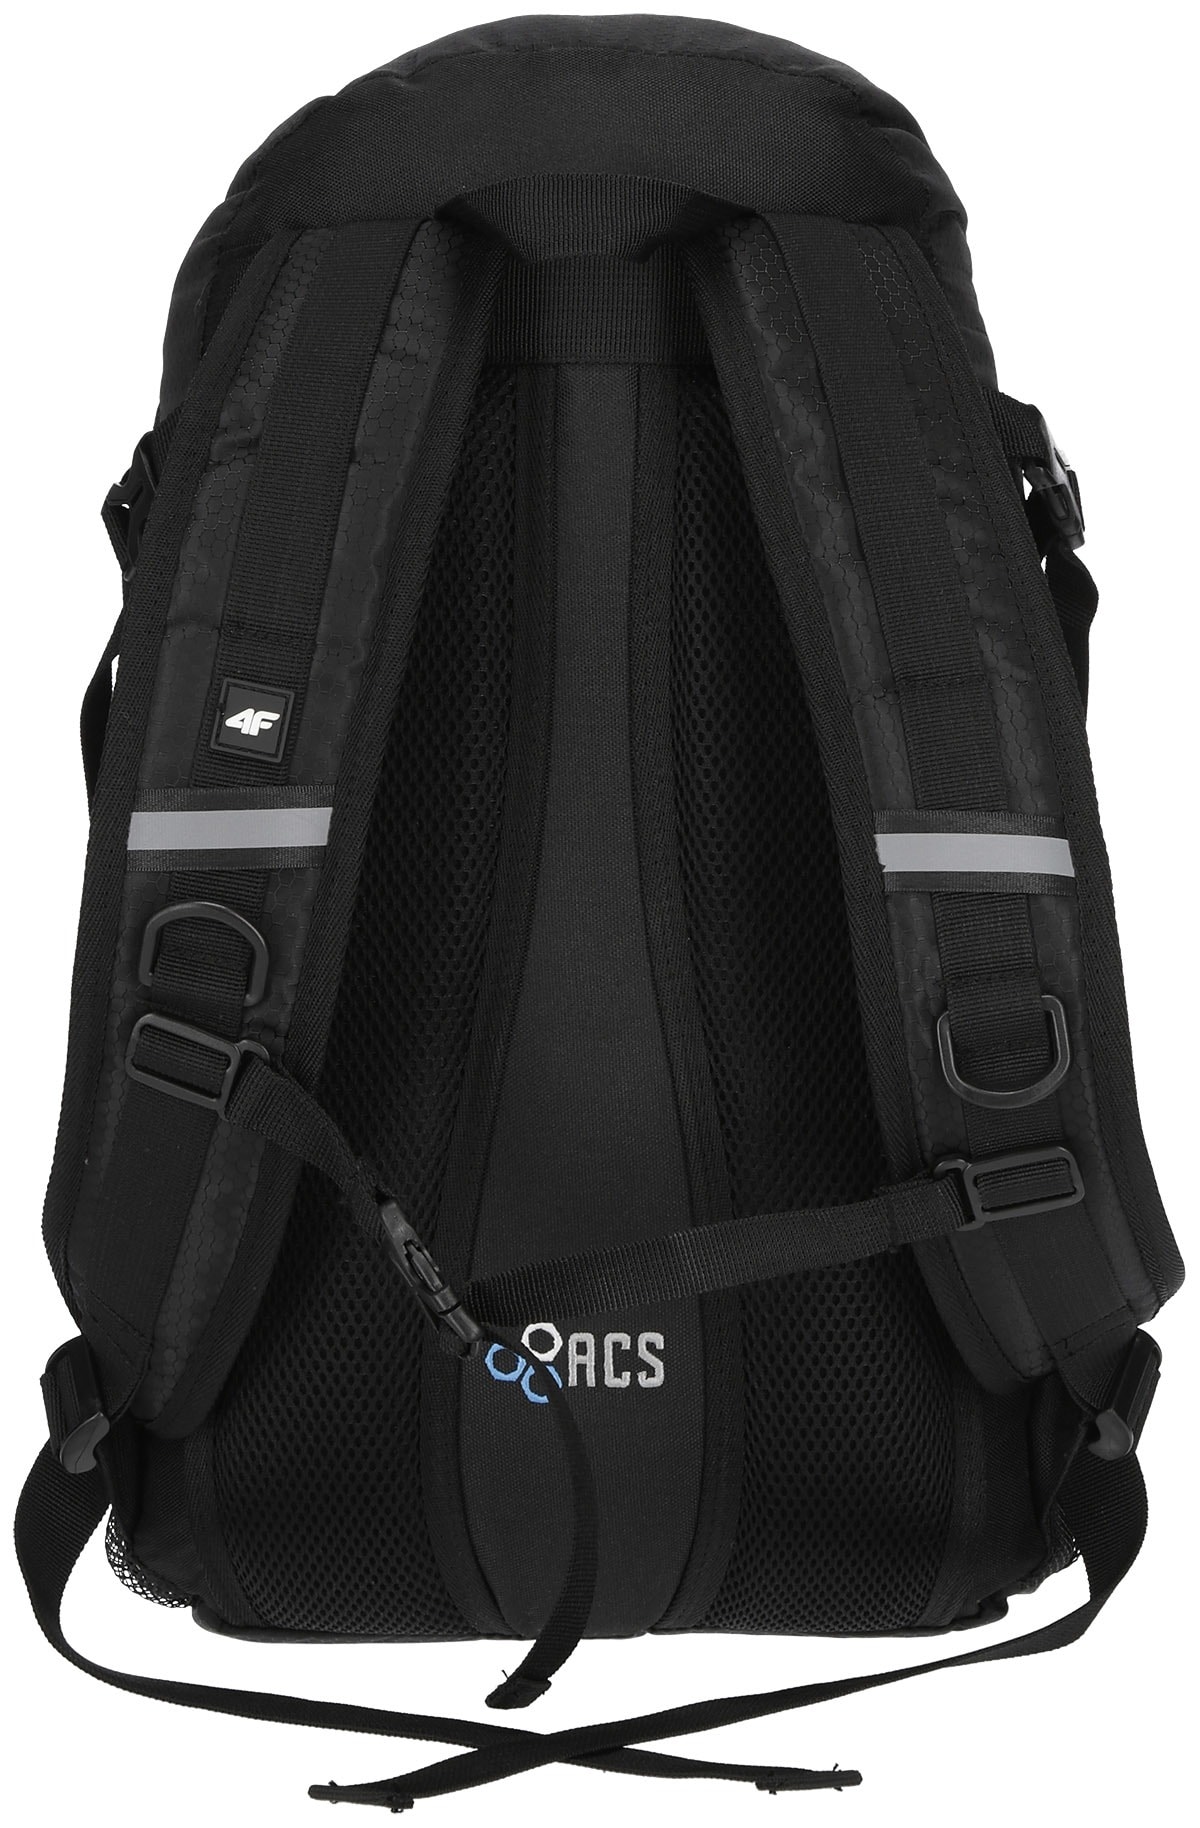 4F Urban Backpack Black pcu017-20s c